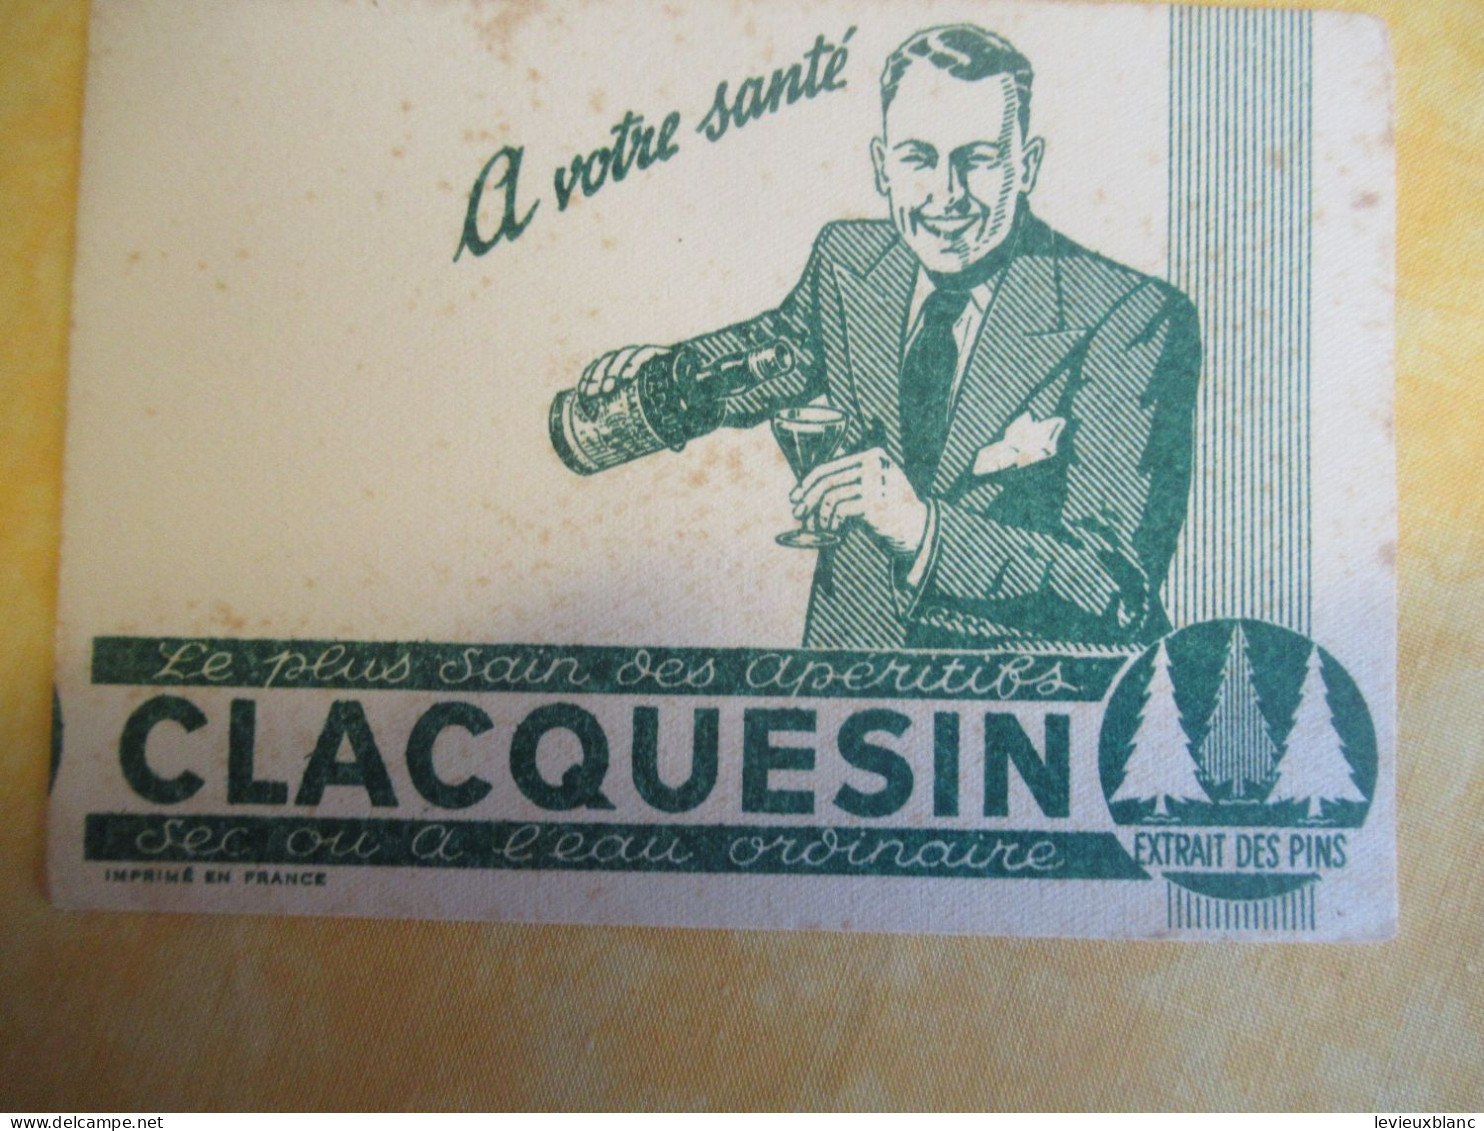 2 Petits Buvards Anciens /Liqueur/CLACQUESIN/ Extrait Des Pins/En été à L'eau Fraîche/Vers 1950-1960      BUV702 - Liquor & Beer